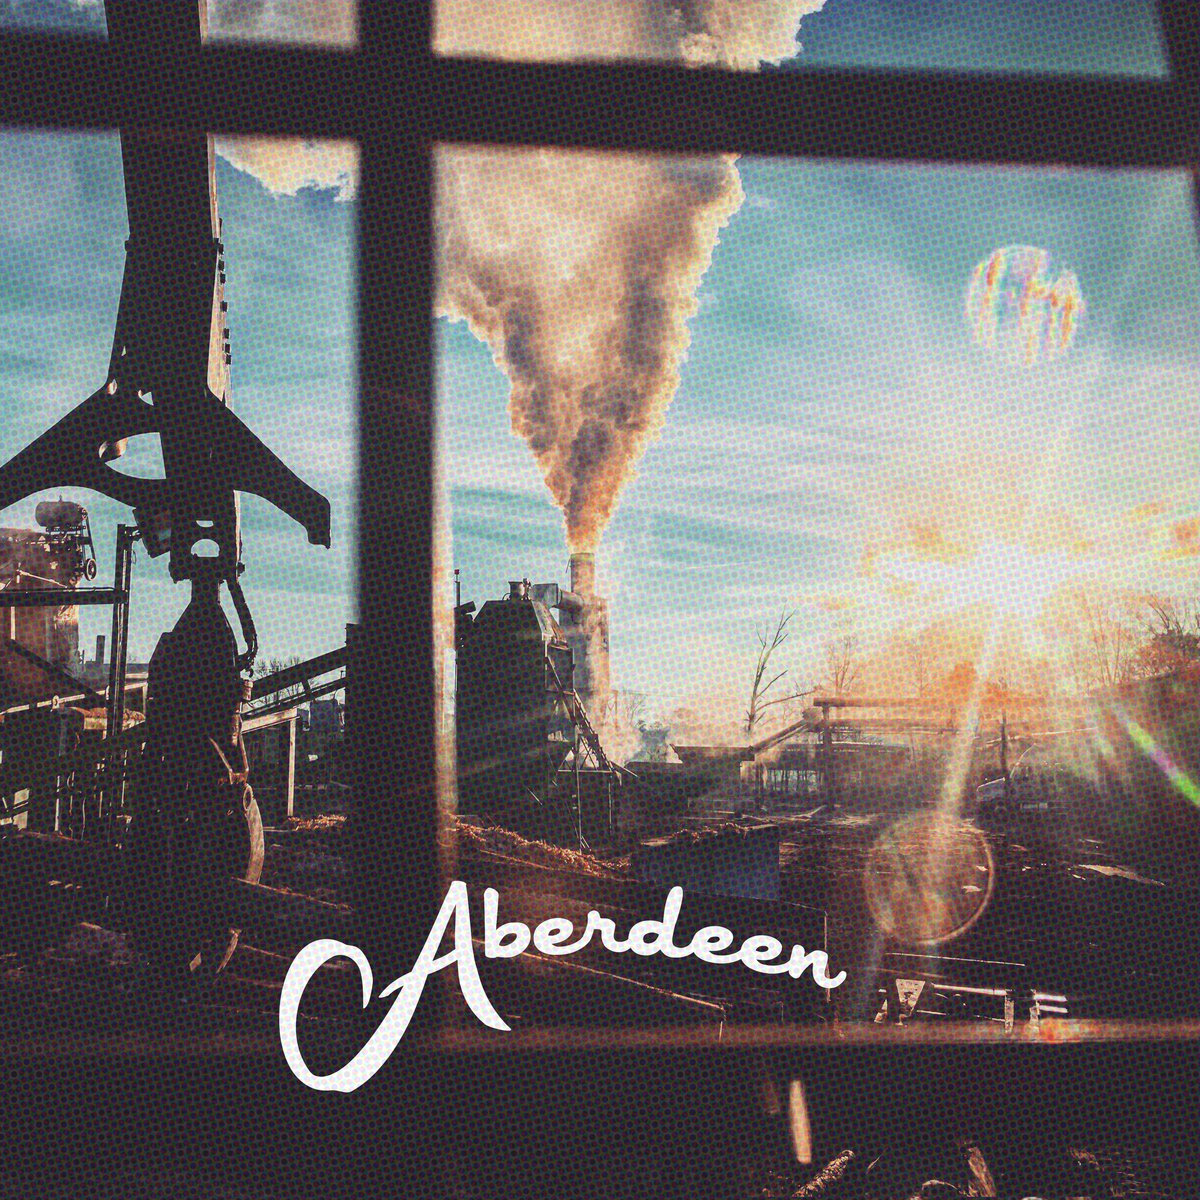 Lost Lander - Aberdeen 